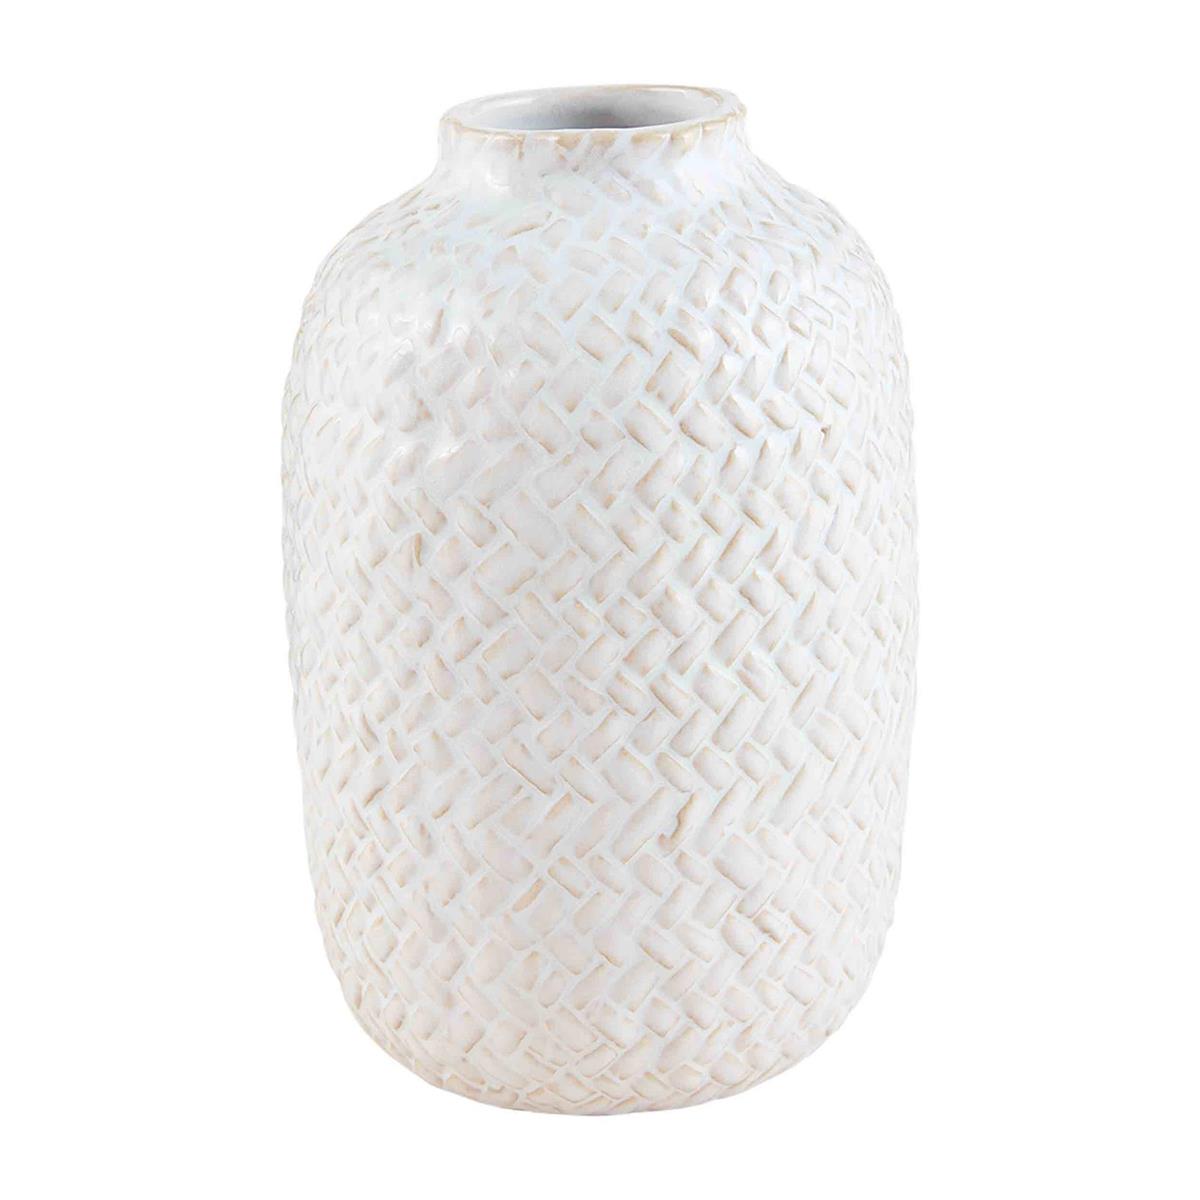 large vase with basket weave pattern.